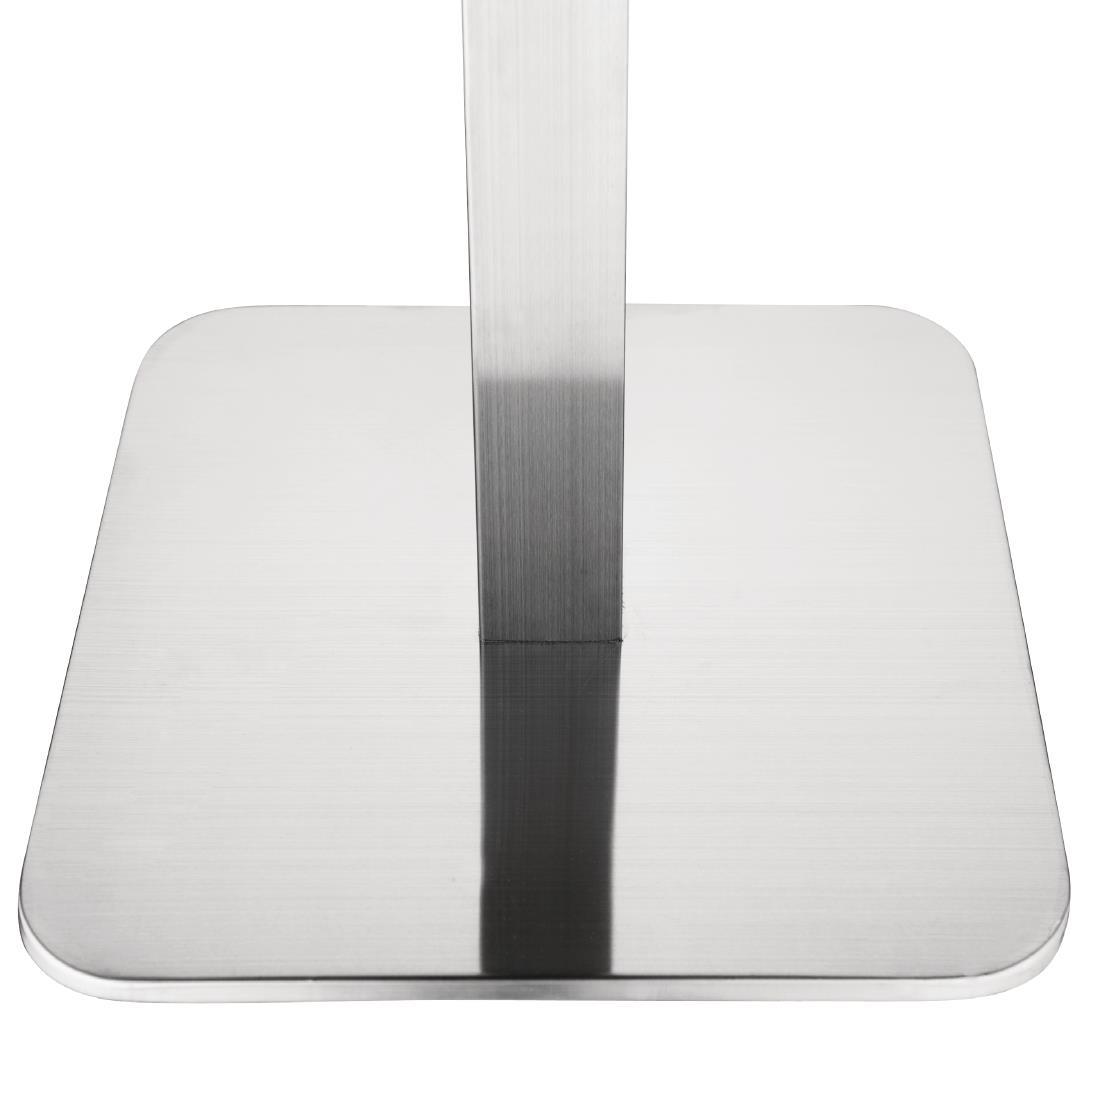 Bolero Square Stainless Steel Table Base - GK993  - 2